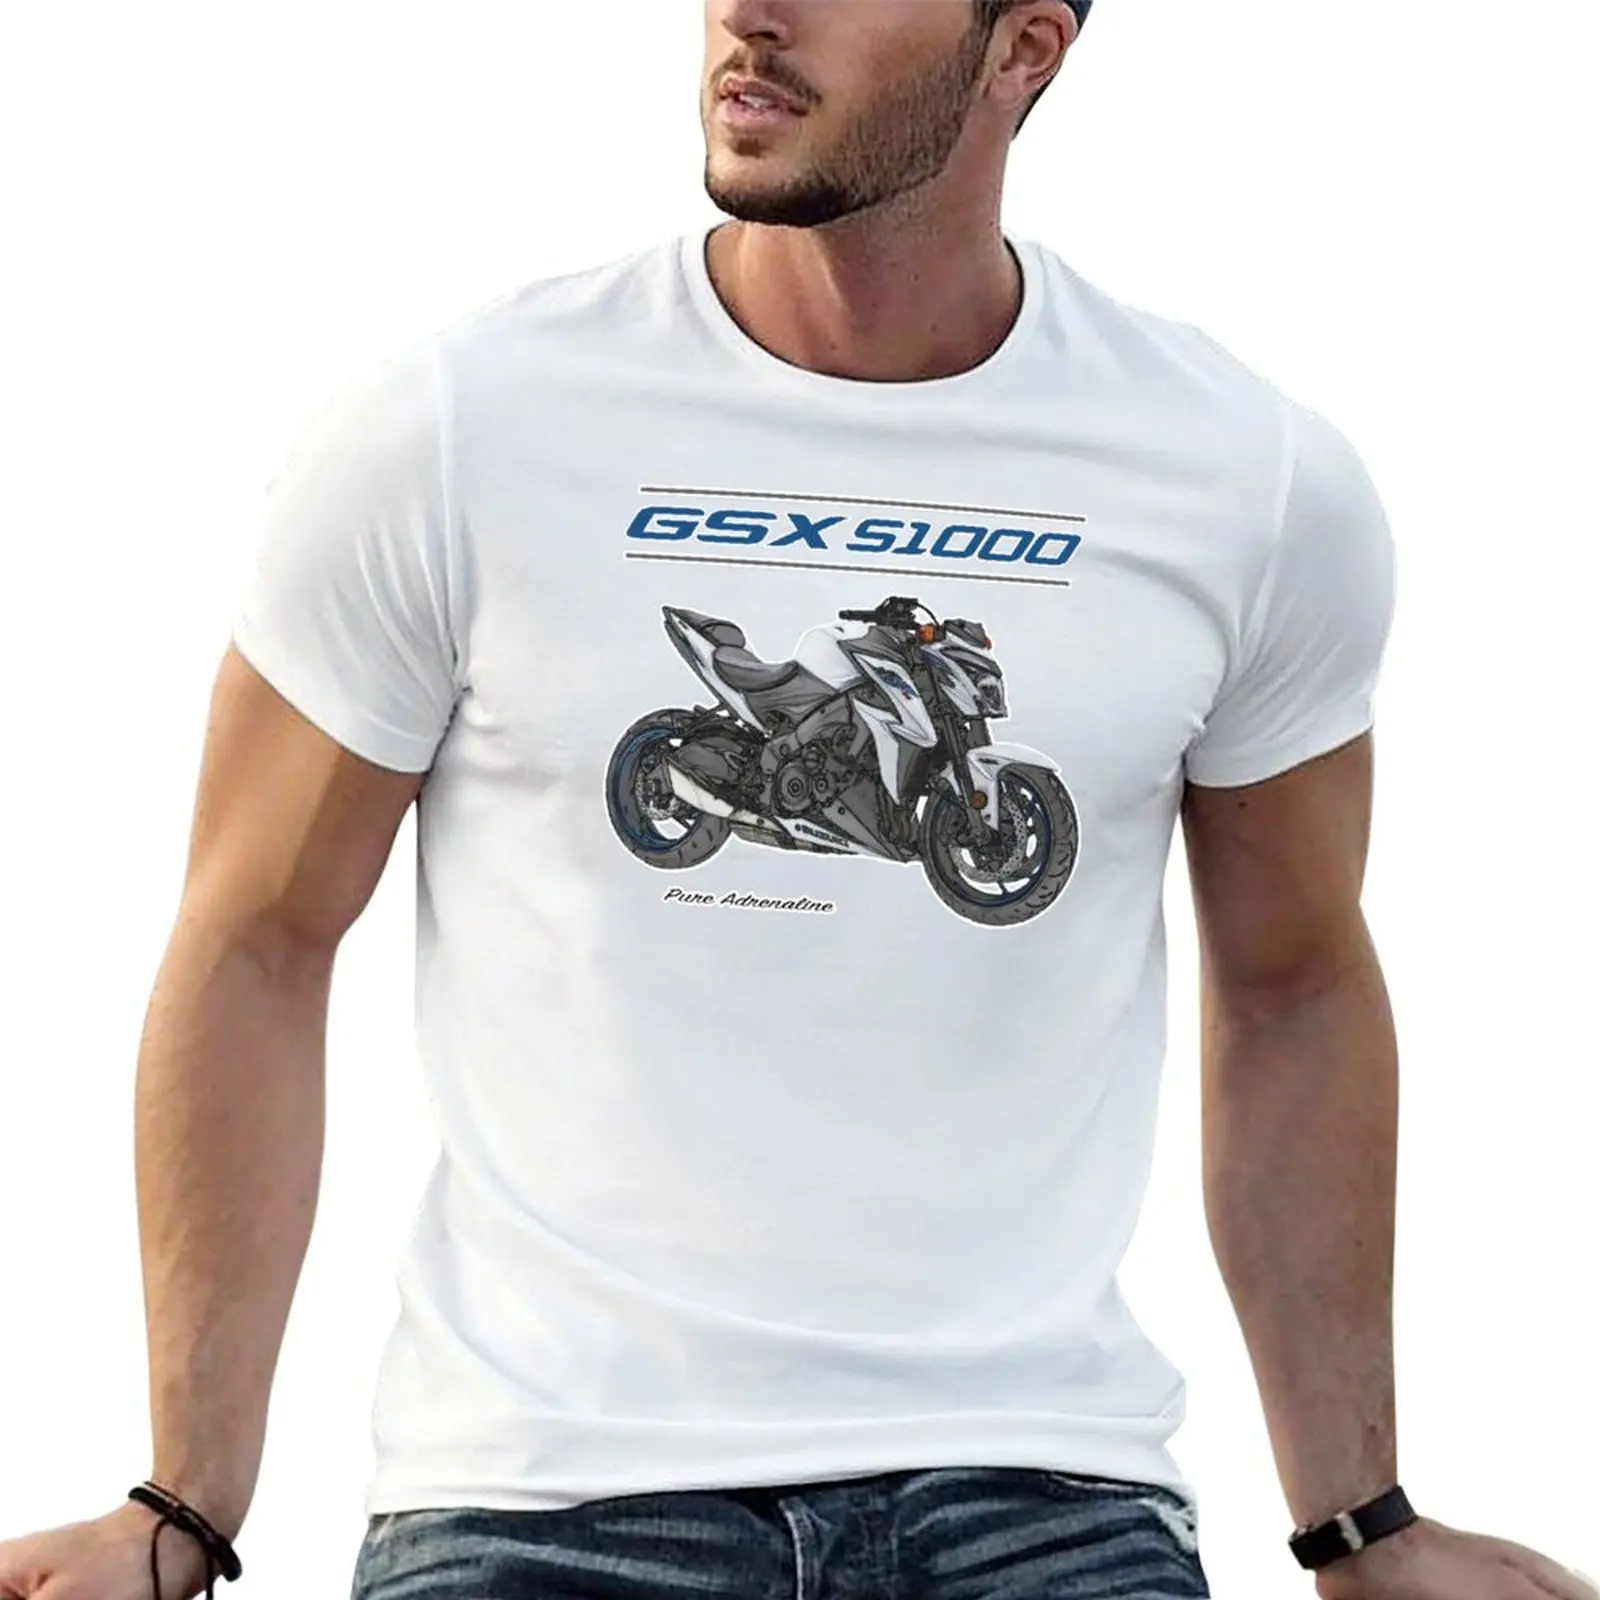 

GSX S1000-футболка индивидуального дизайна, черная винтажная одежда, летний топ, облегающие футболки для мужчин